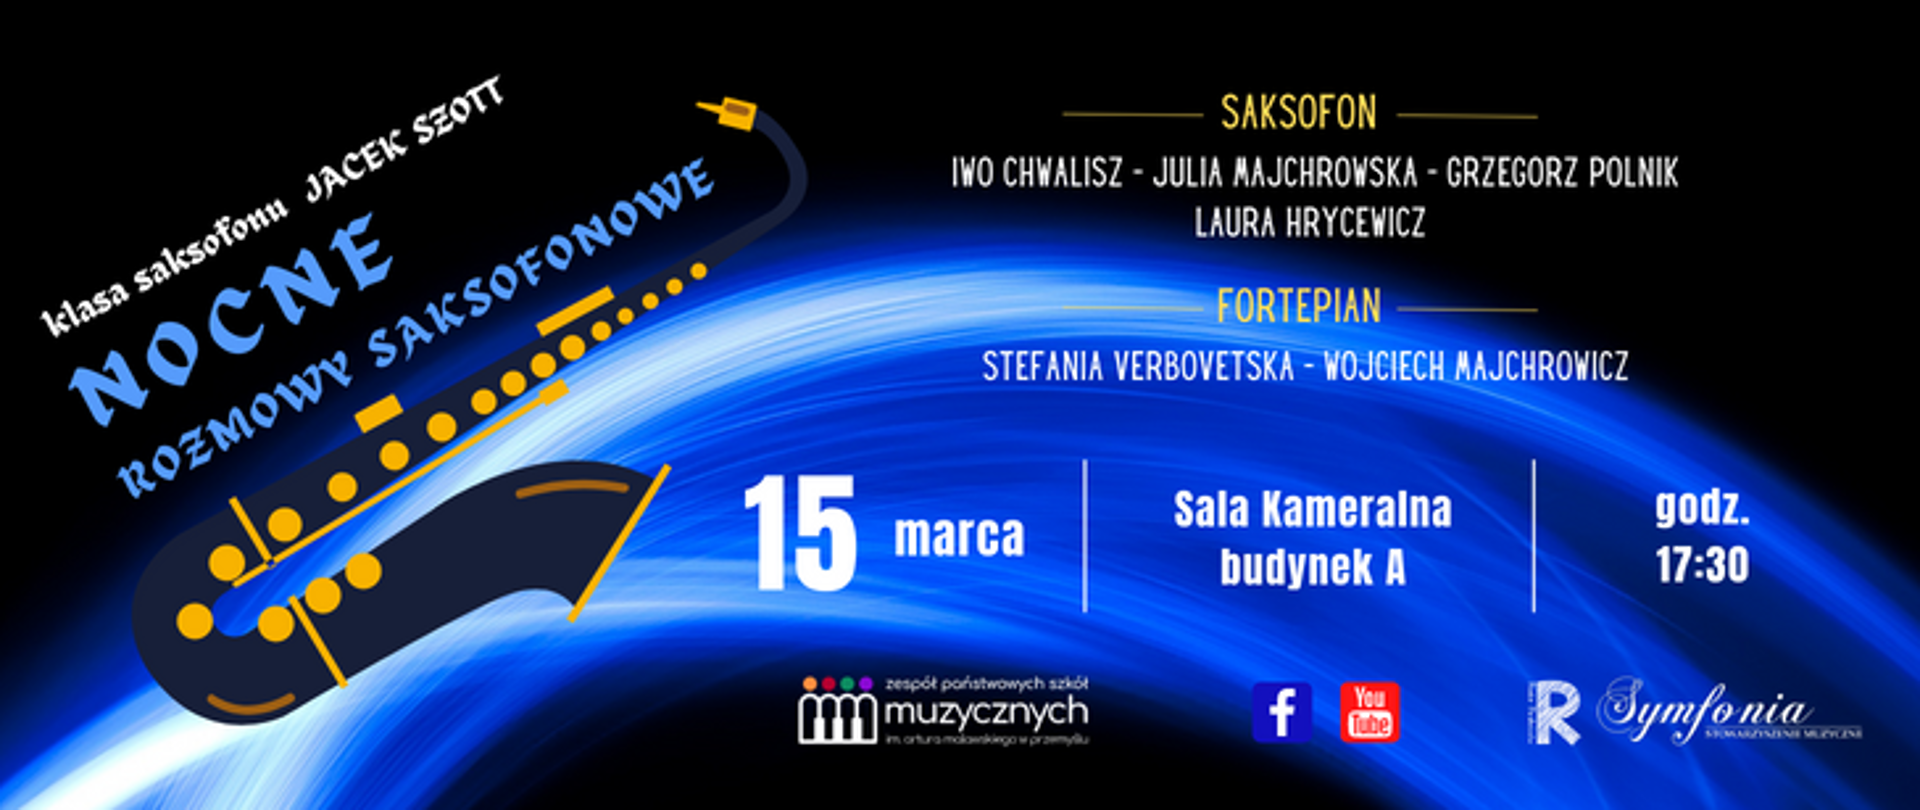 Zapowiedź koncertu Nocne Rozmowy Saksofonowe który odbędzie się 15 marca 2023r w Sali Kameralnej ZPSM w Przemyślu.